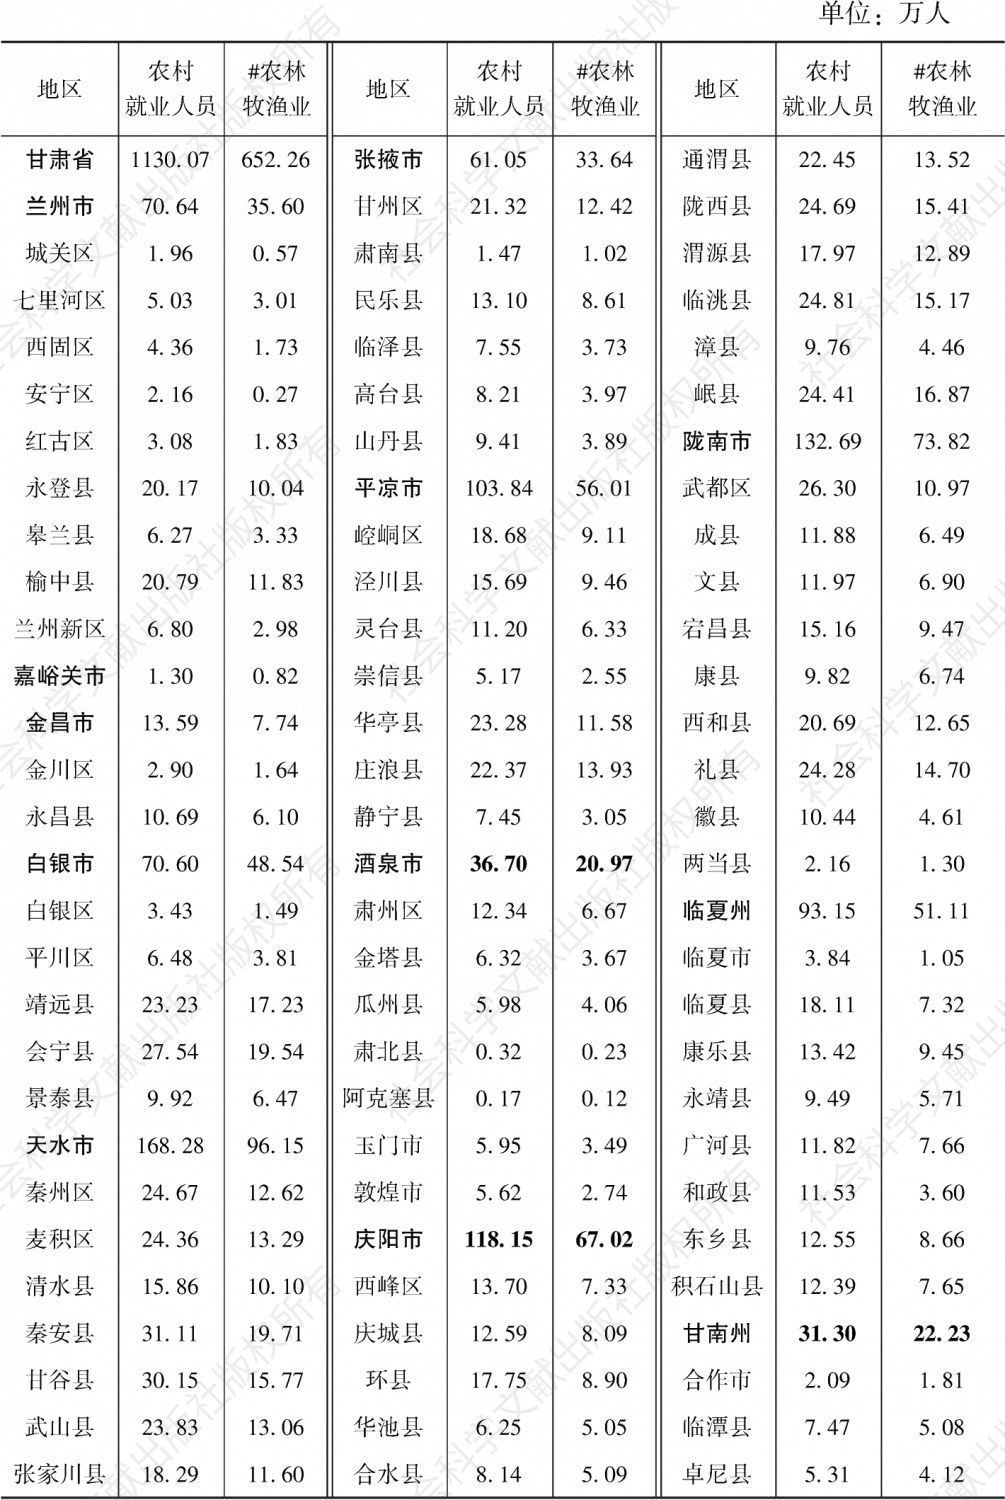 表1-6 甘肃省各县（市、区）2018年农村就业人员情况